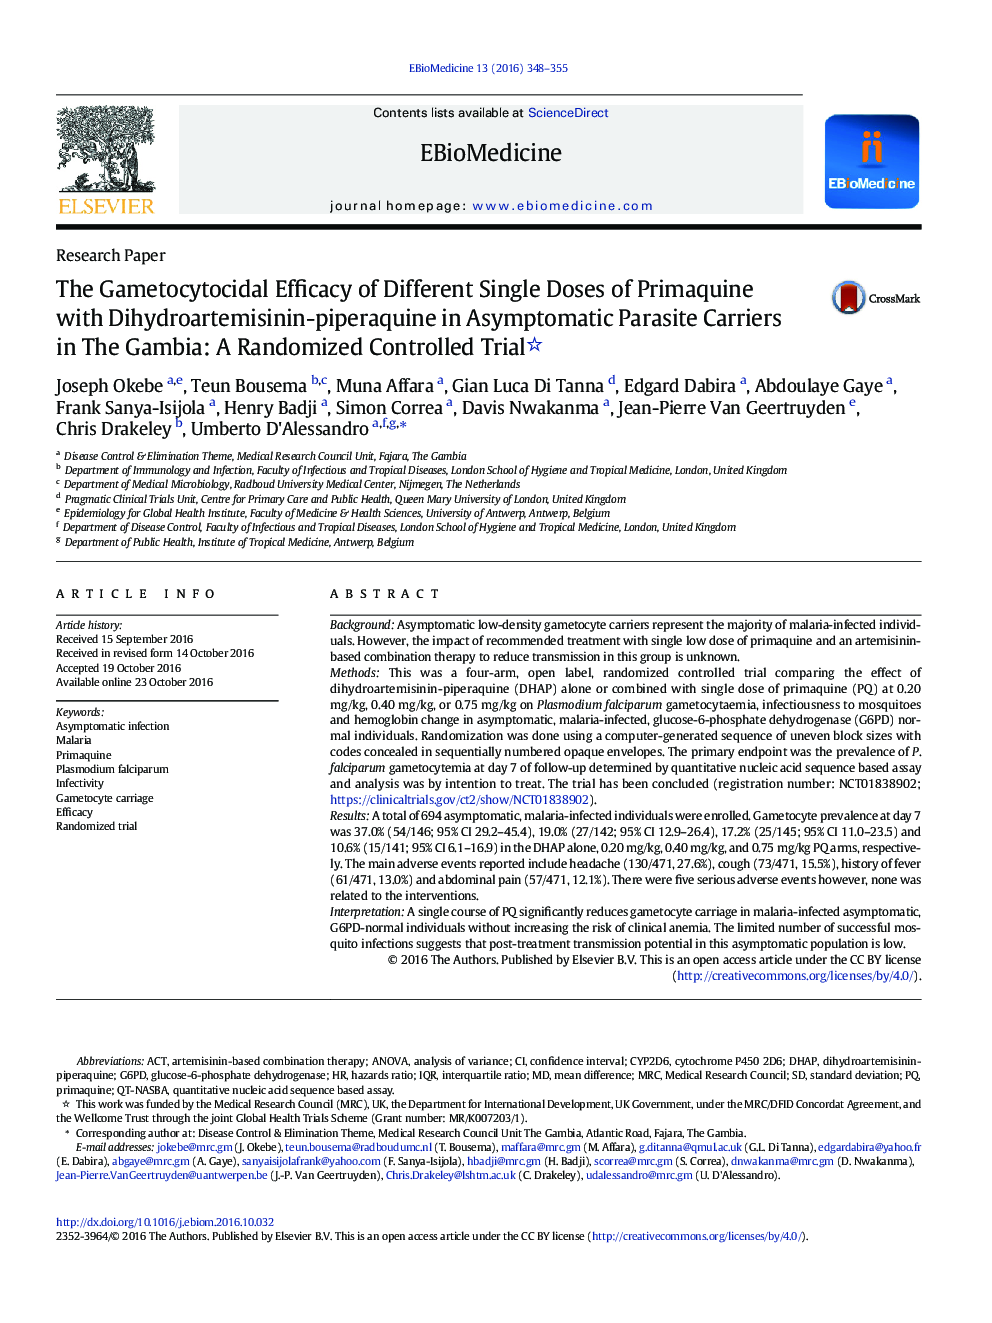 اثرات گامتوسیتوسیدز دوزهای مختلف پریموچین با دی هیدروترمیزینین-پیپرآکین در حاملهای انگلی بدون علامت در گامبیا: یک آزمایش کنترل شده تصادفی 